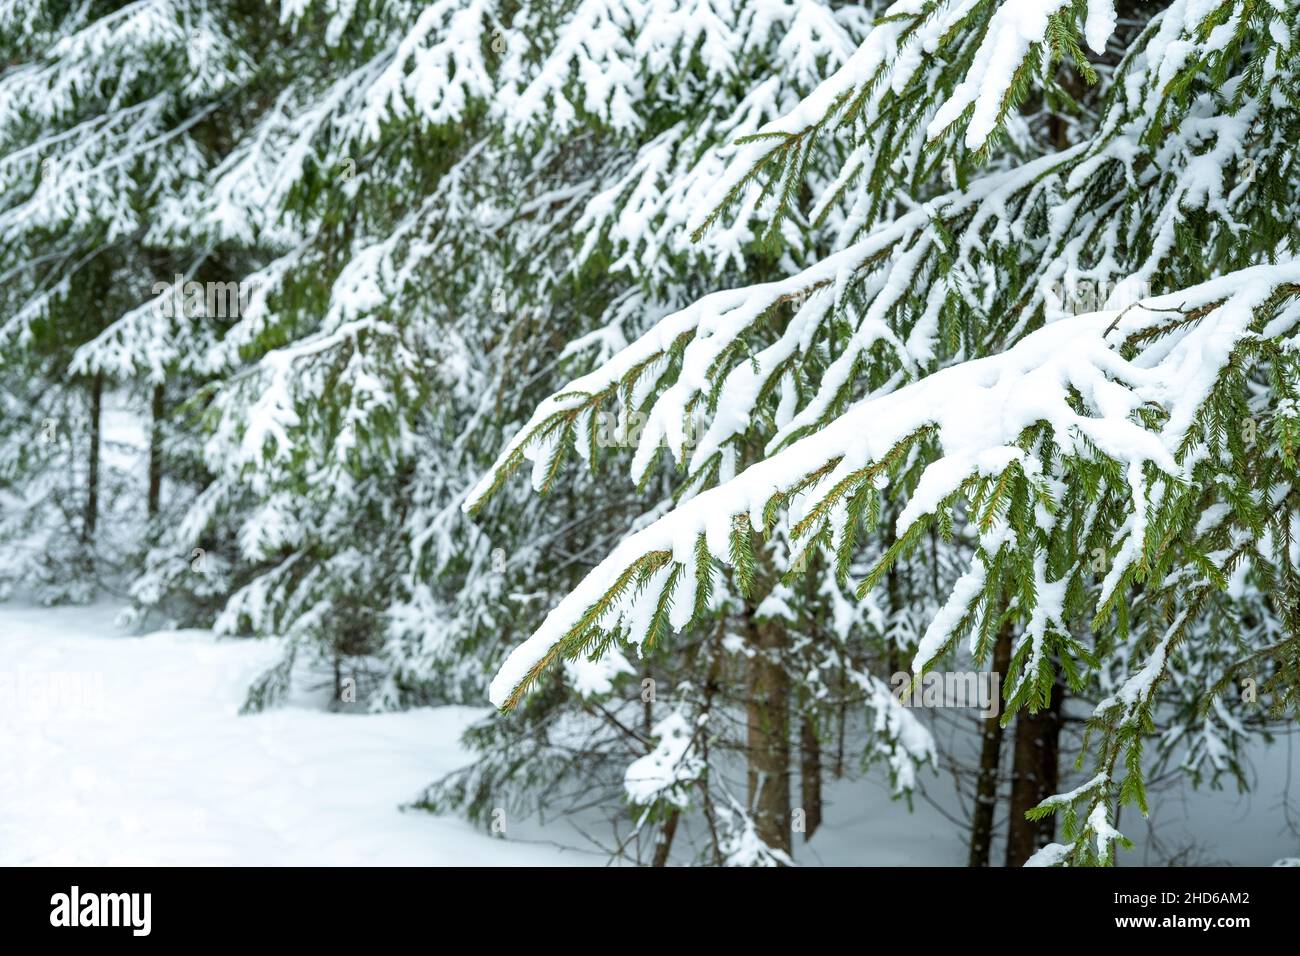 Magnifique paysage d'hiver.Arbres couverts de neige dans la forêt.Hiver nature fond. Banque D'Images